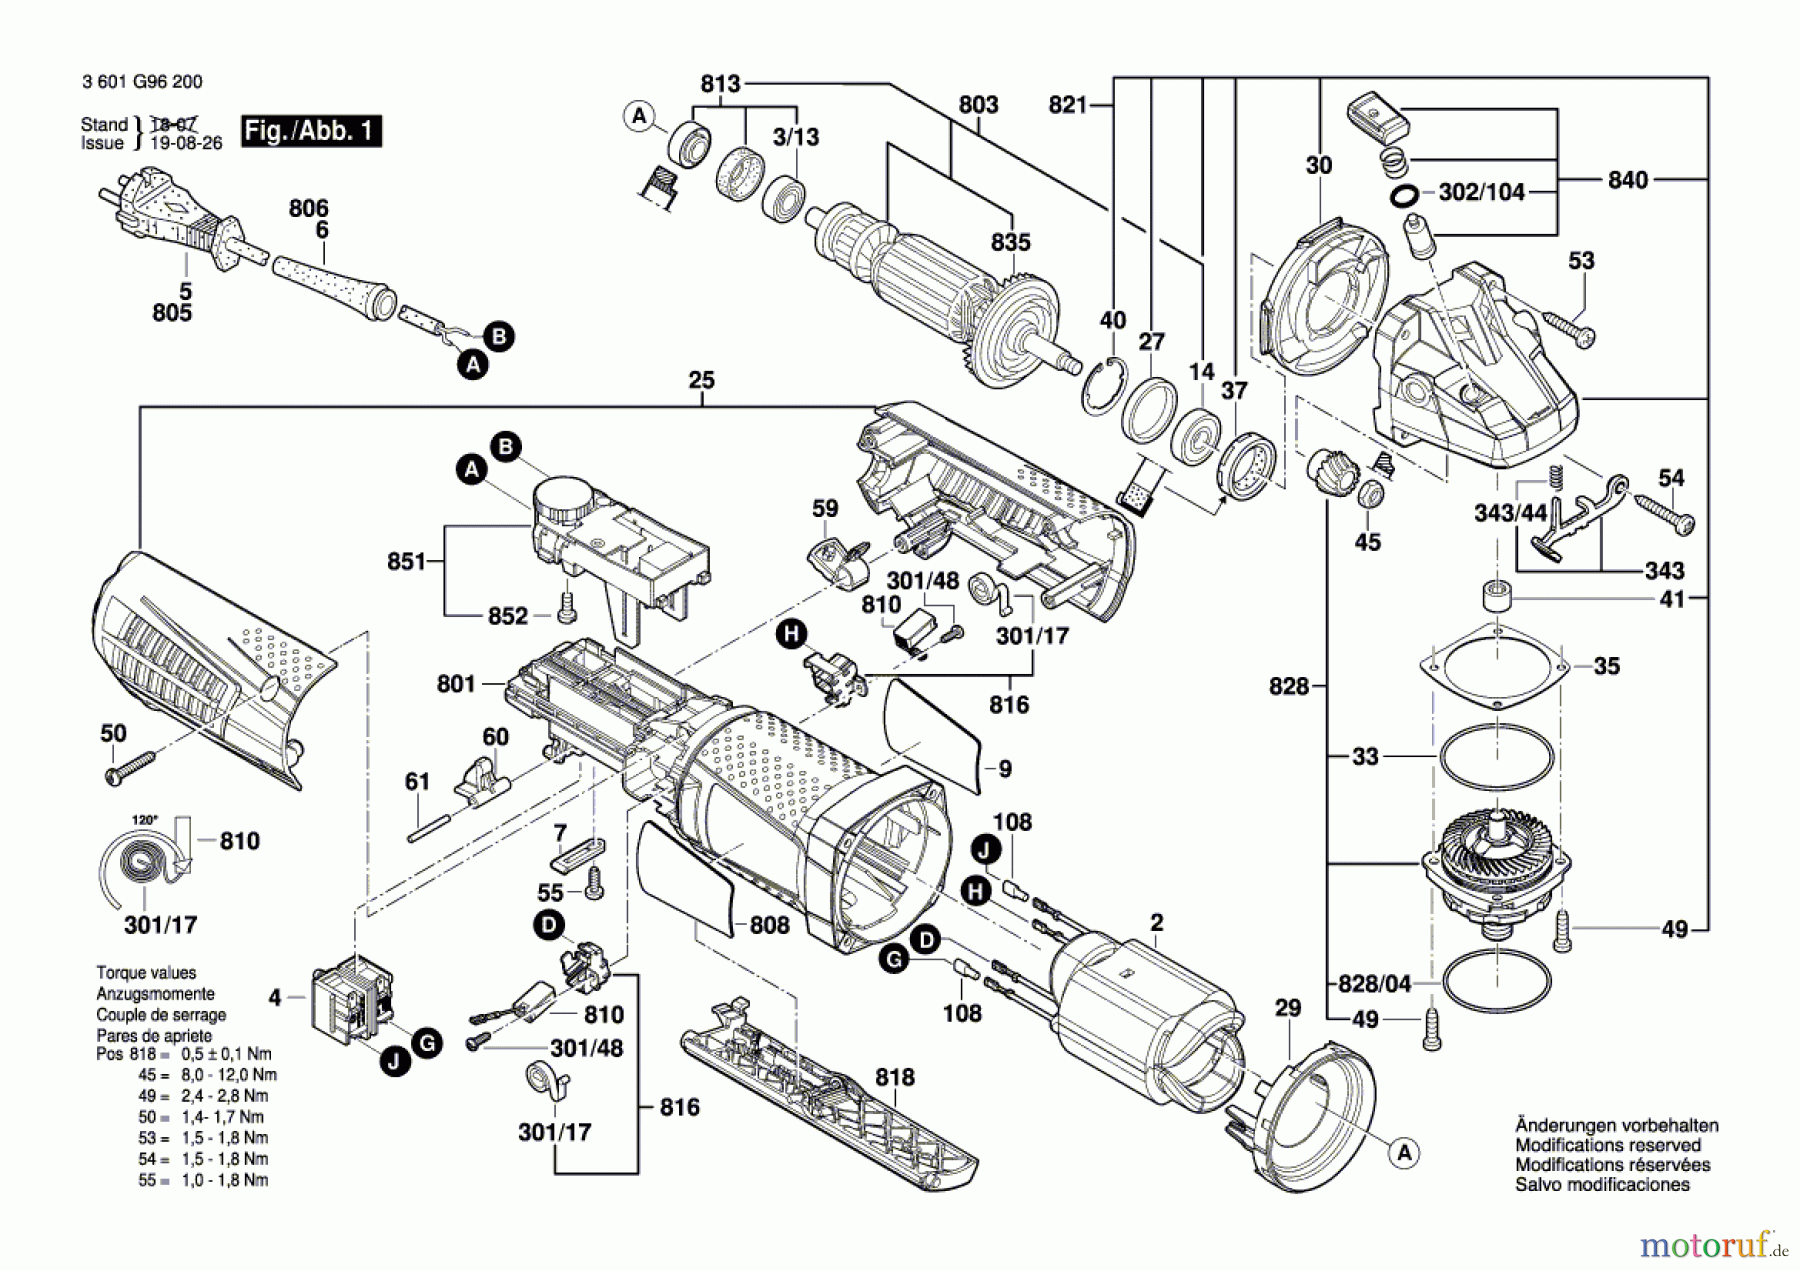  Bosch Werkzeug Winkelschleifer GWS 15-125 CIEP Seite 1